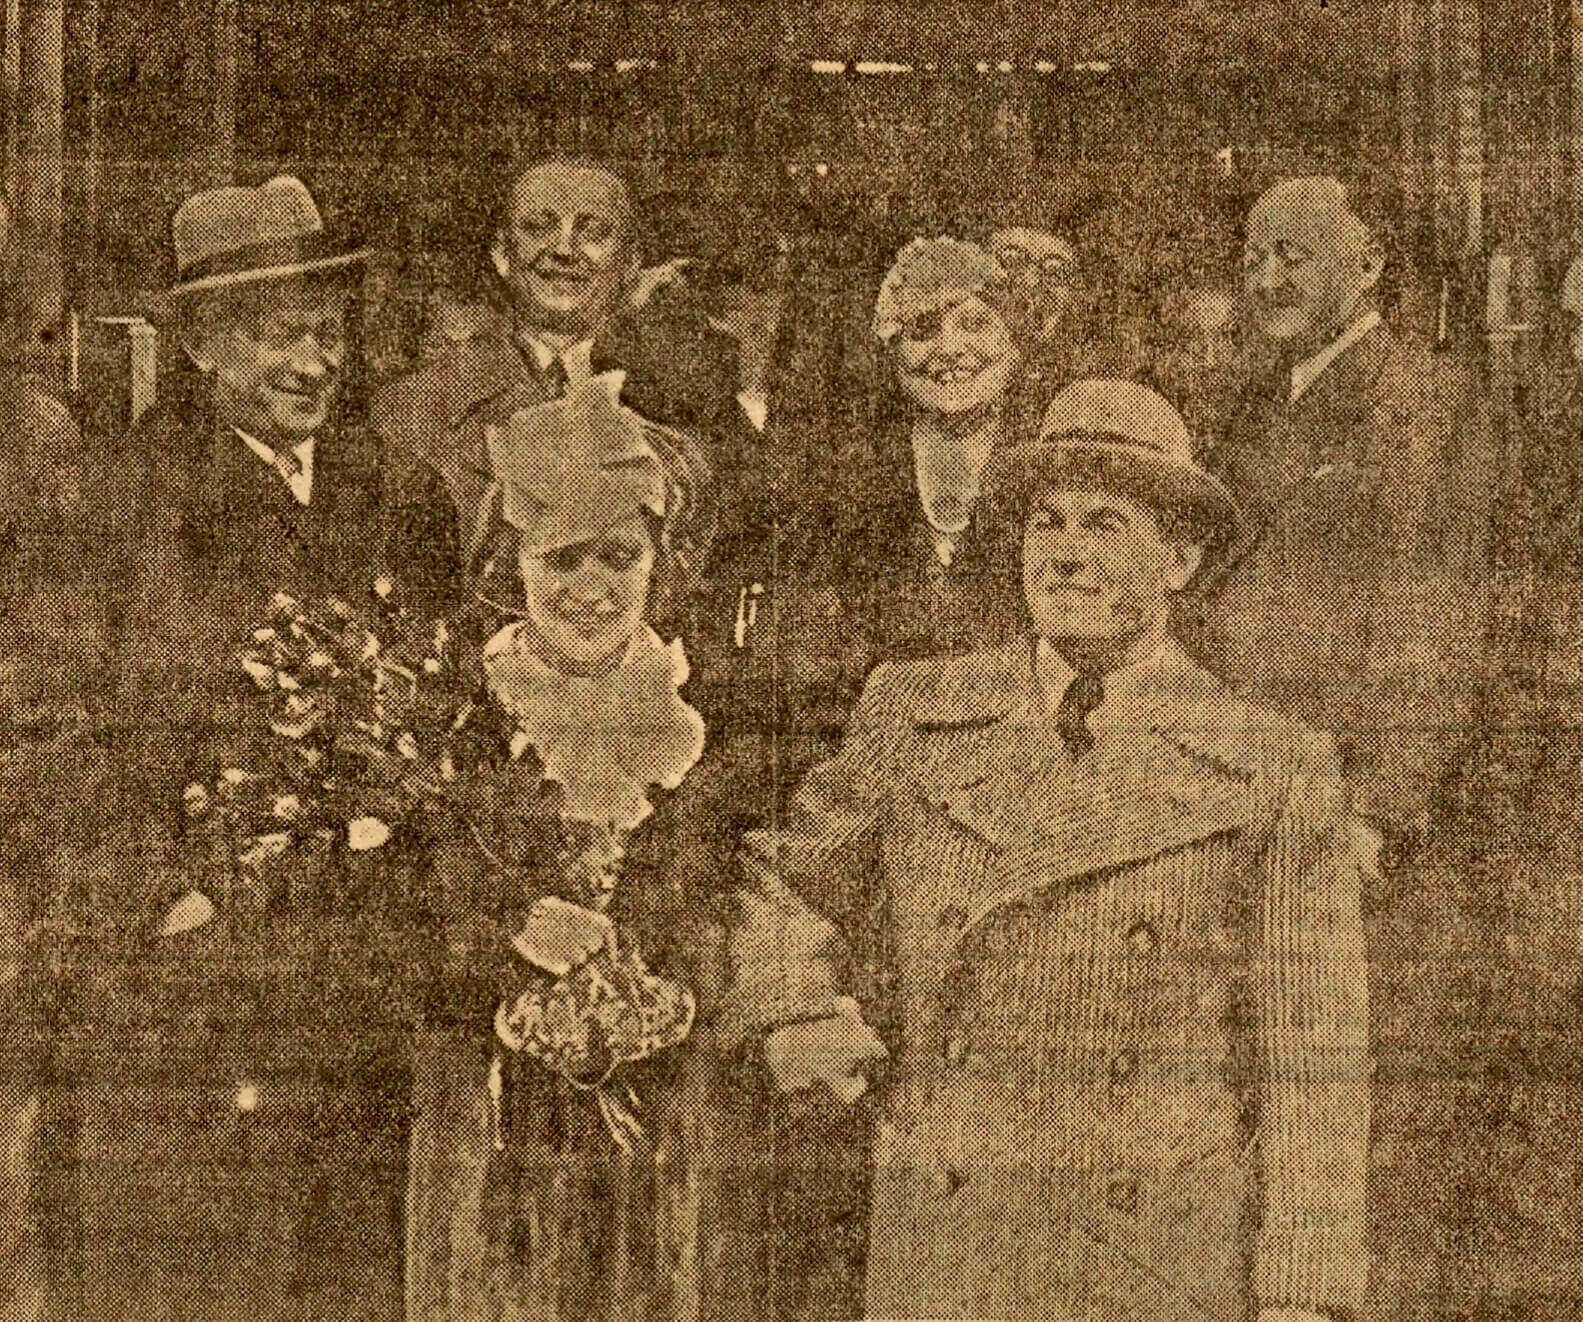 Jan Kiepura i Martha Eggerth wychodzą z katowickiego ratusza po ślubie 31 października 1936